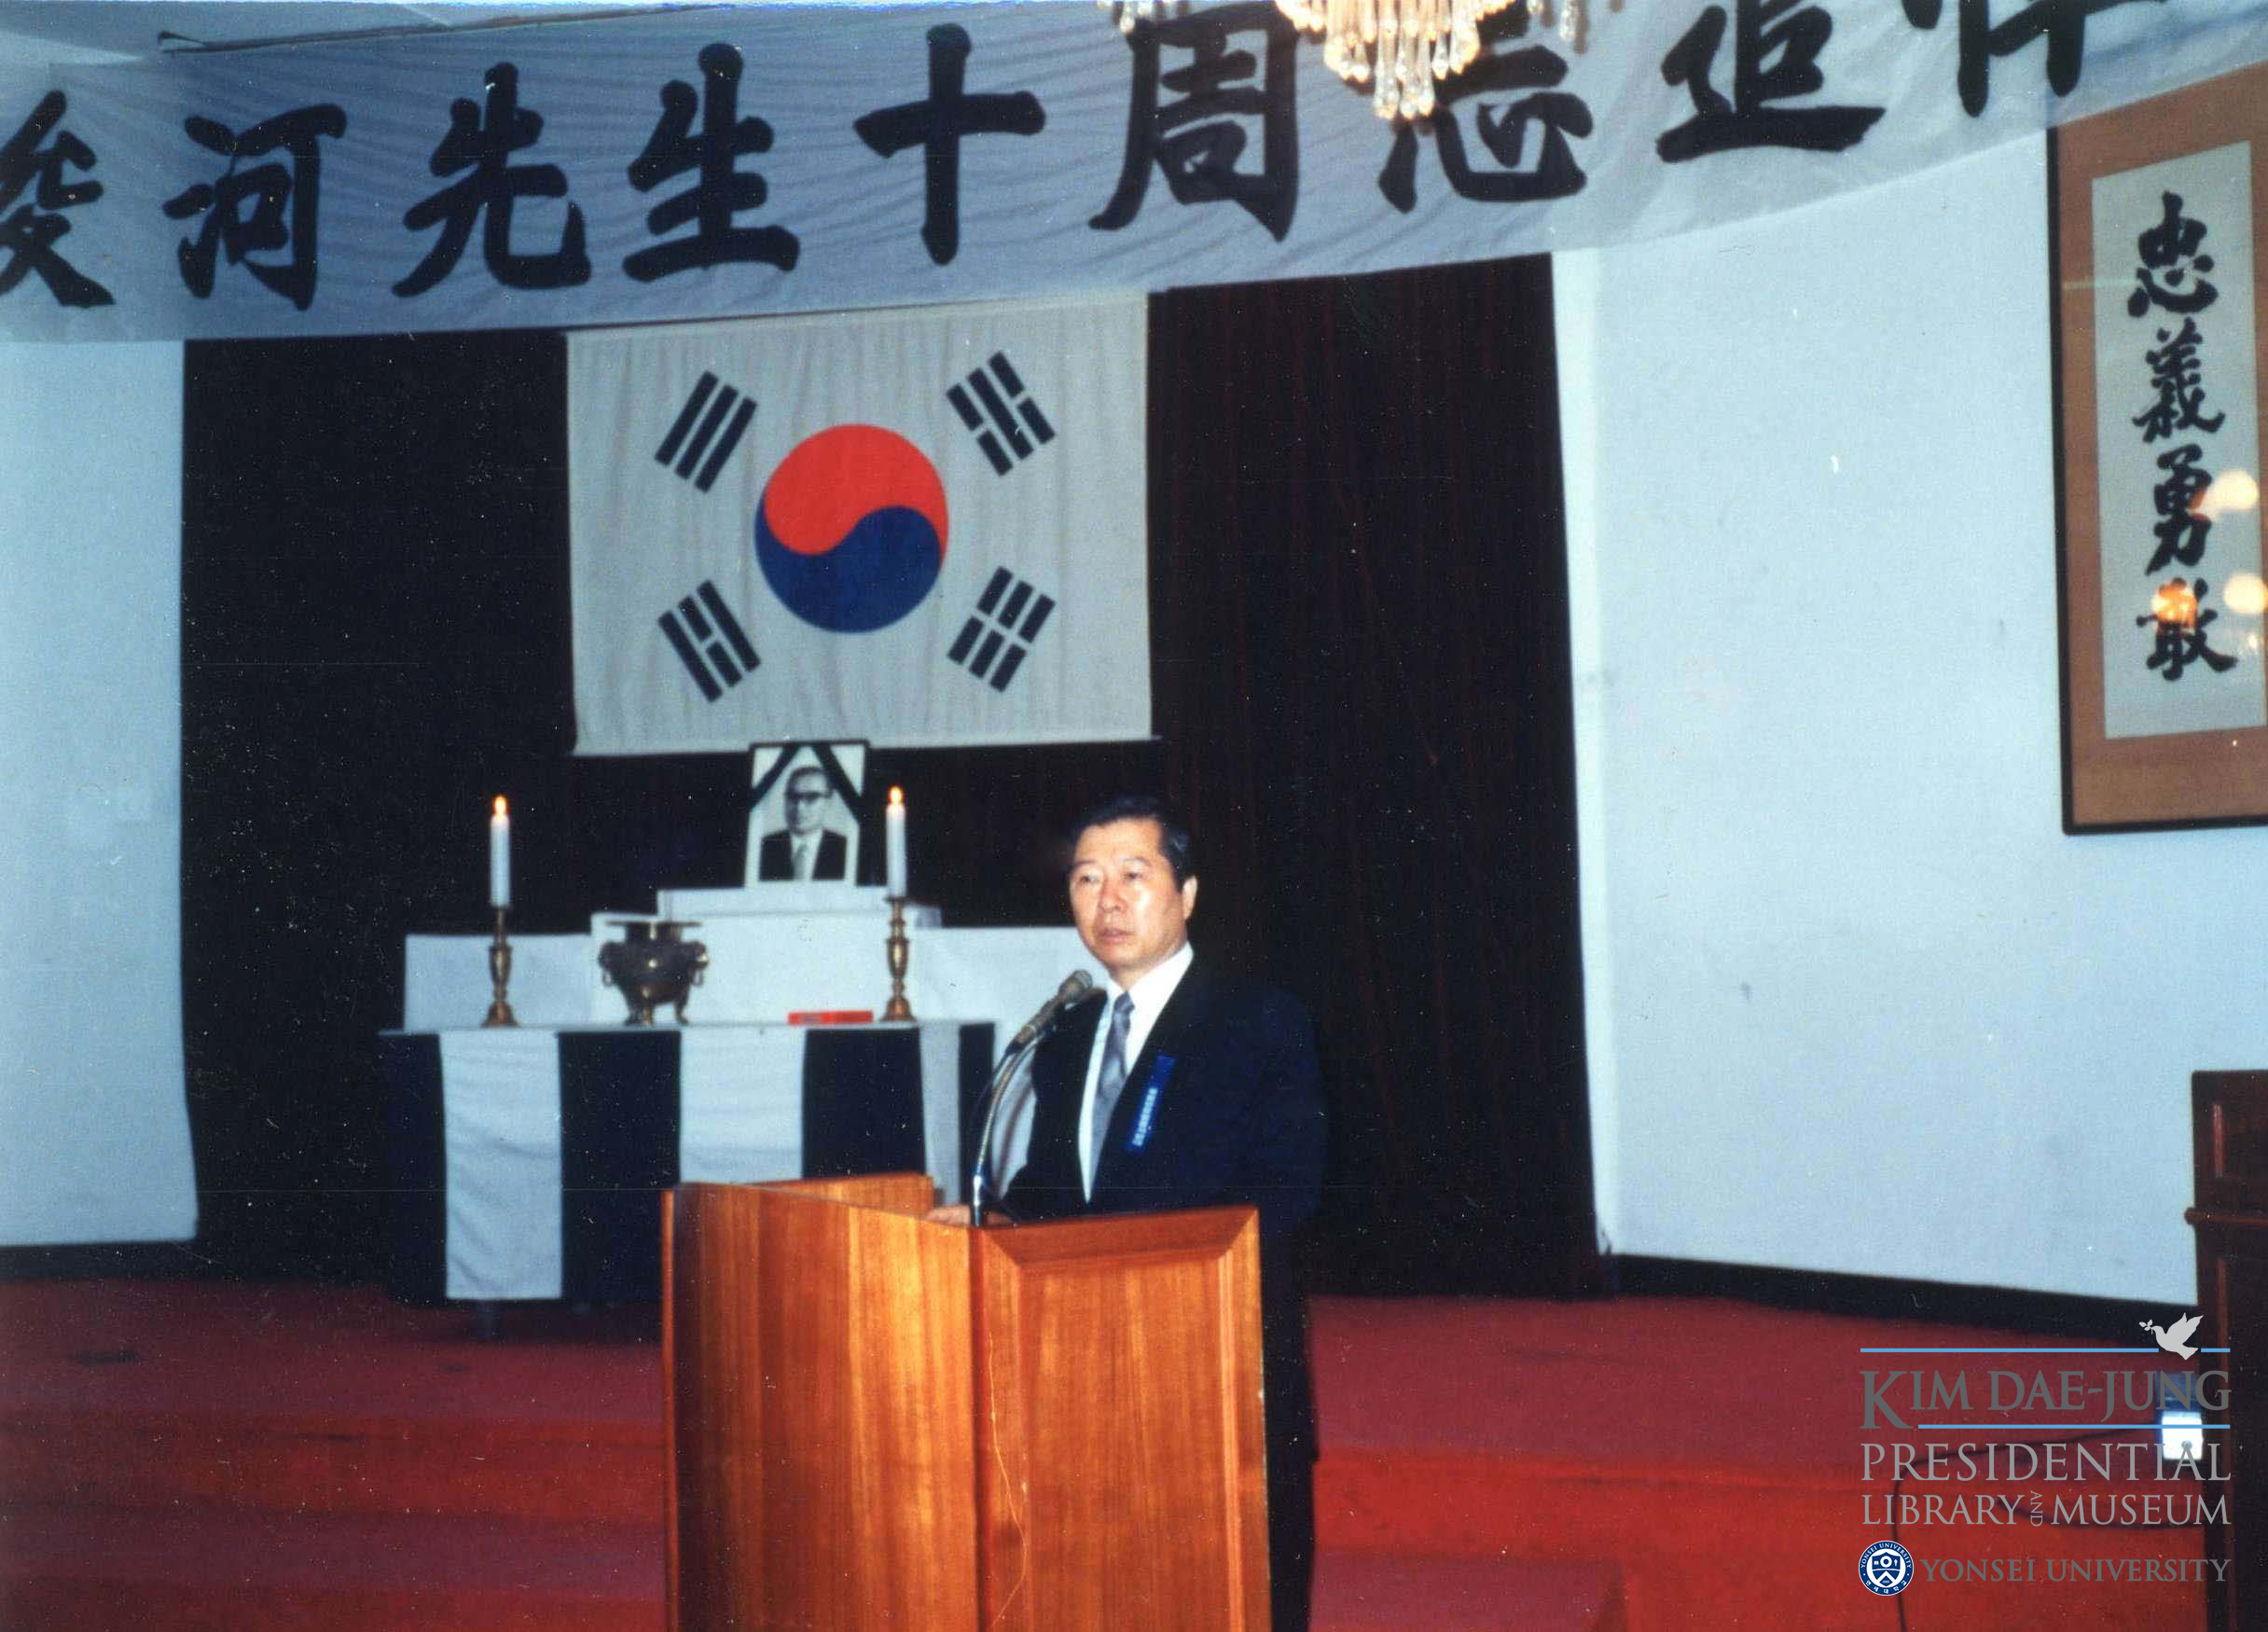 [2021. 8. 17.] 연세대 김대중도서관, 1985년 ‘장준하 선생 서거 10주기 추도식’ 사진 공개